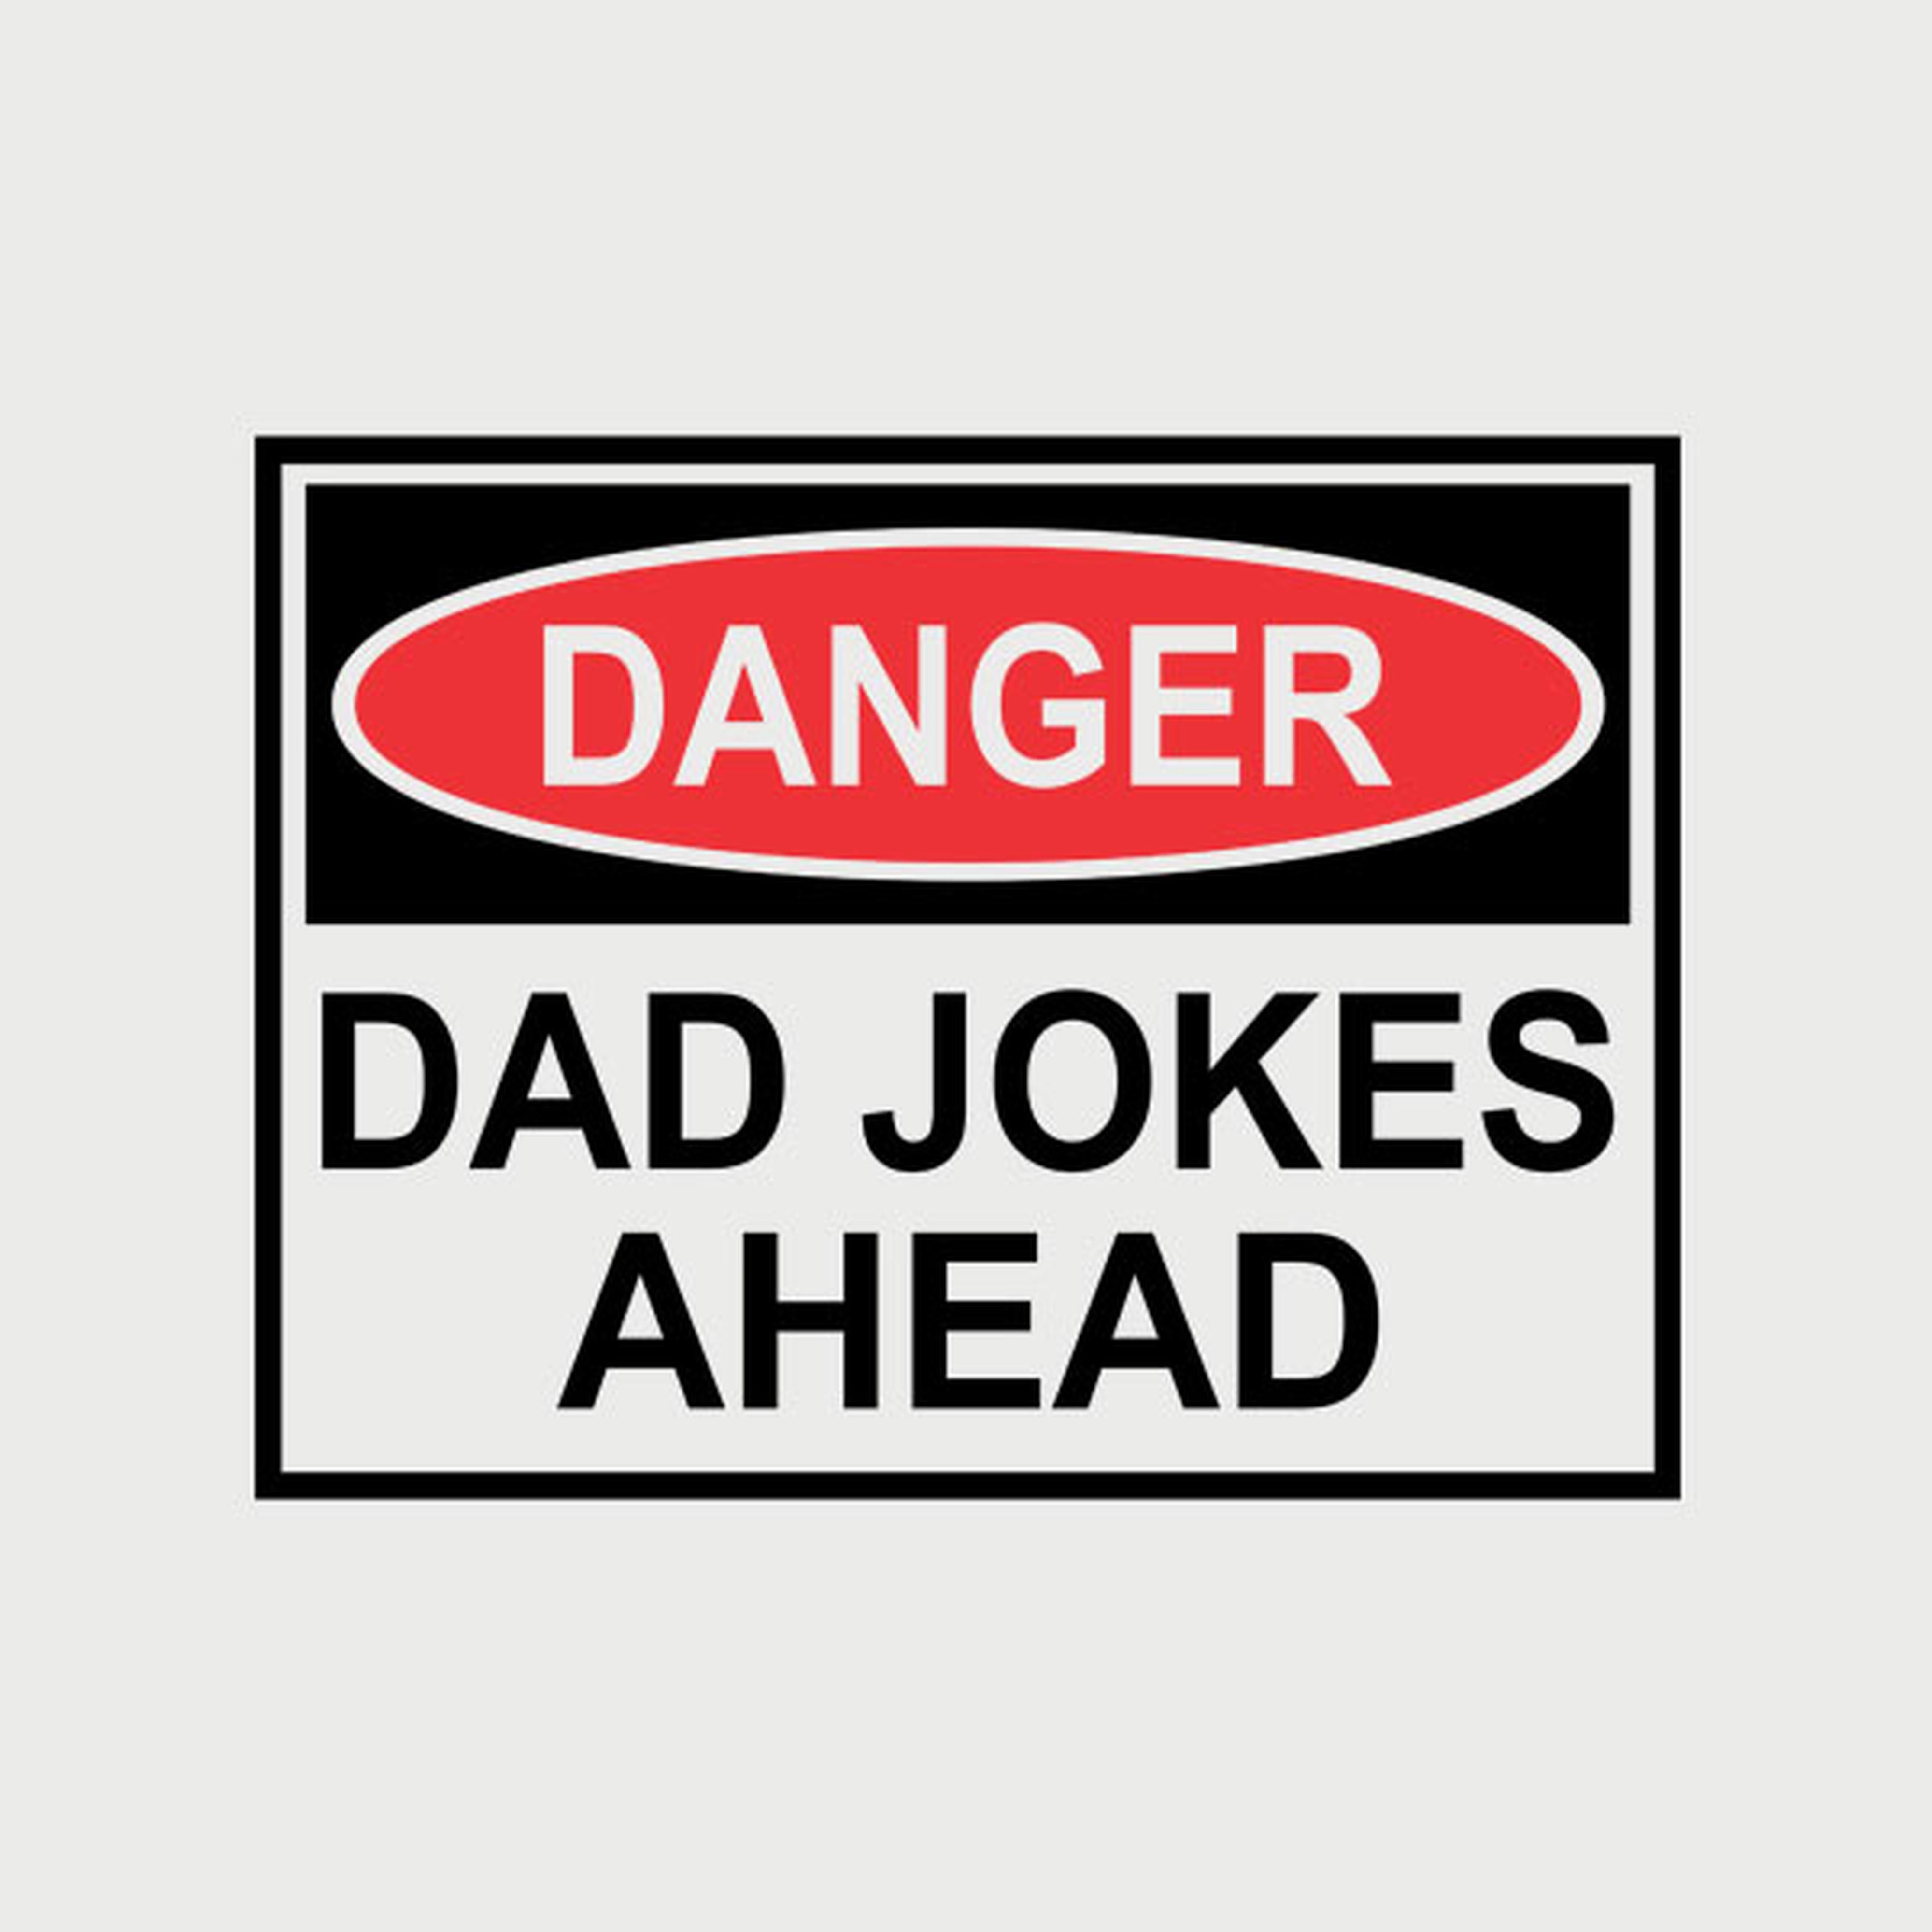 Dad jokes ahead